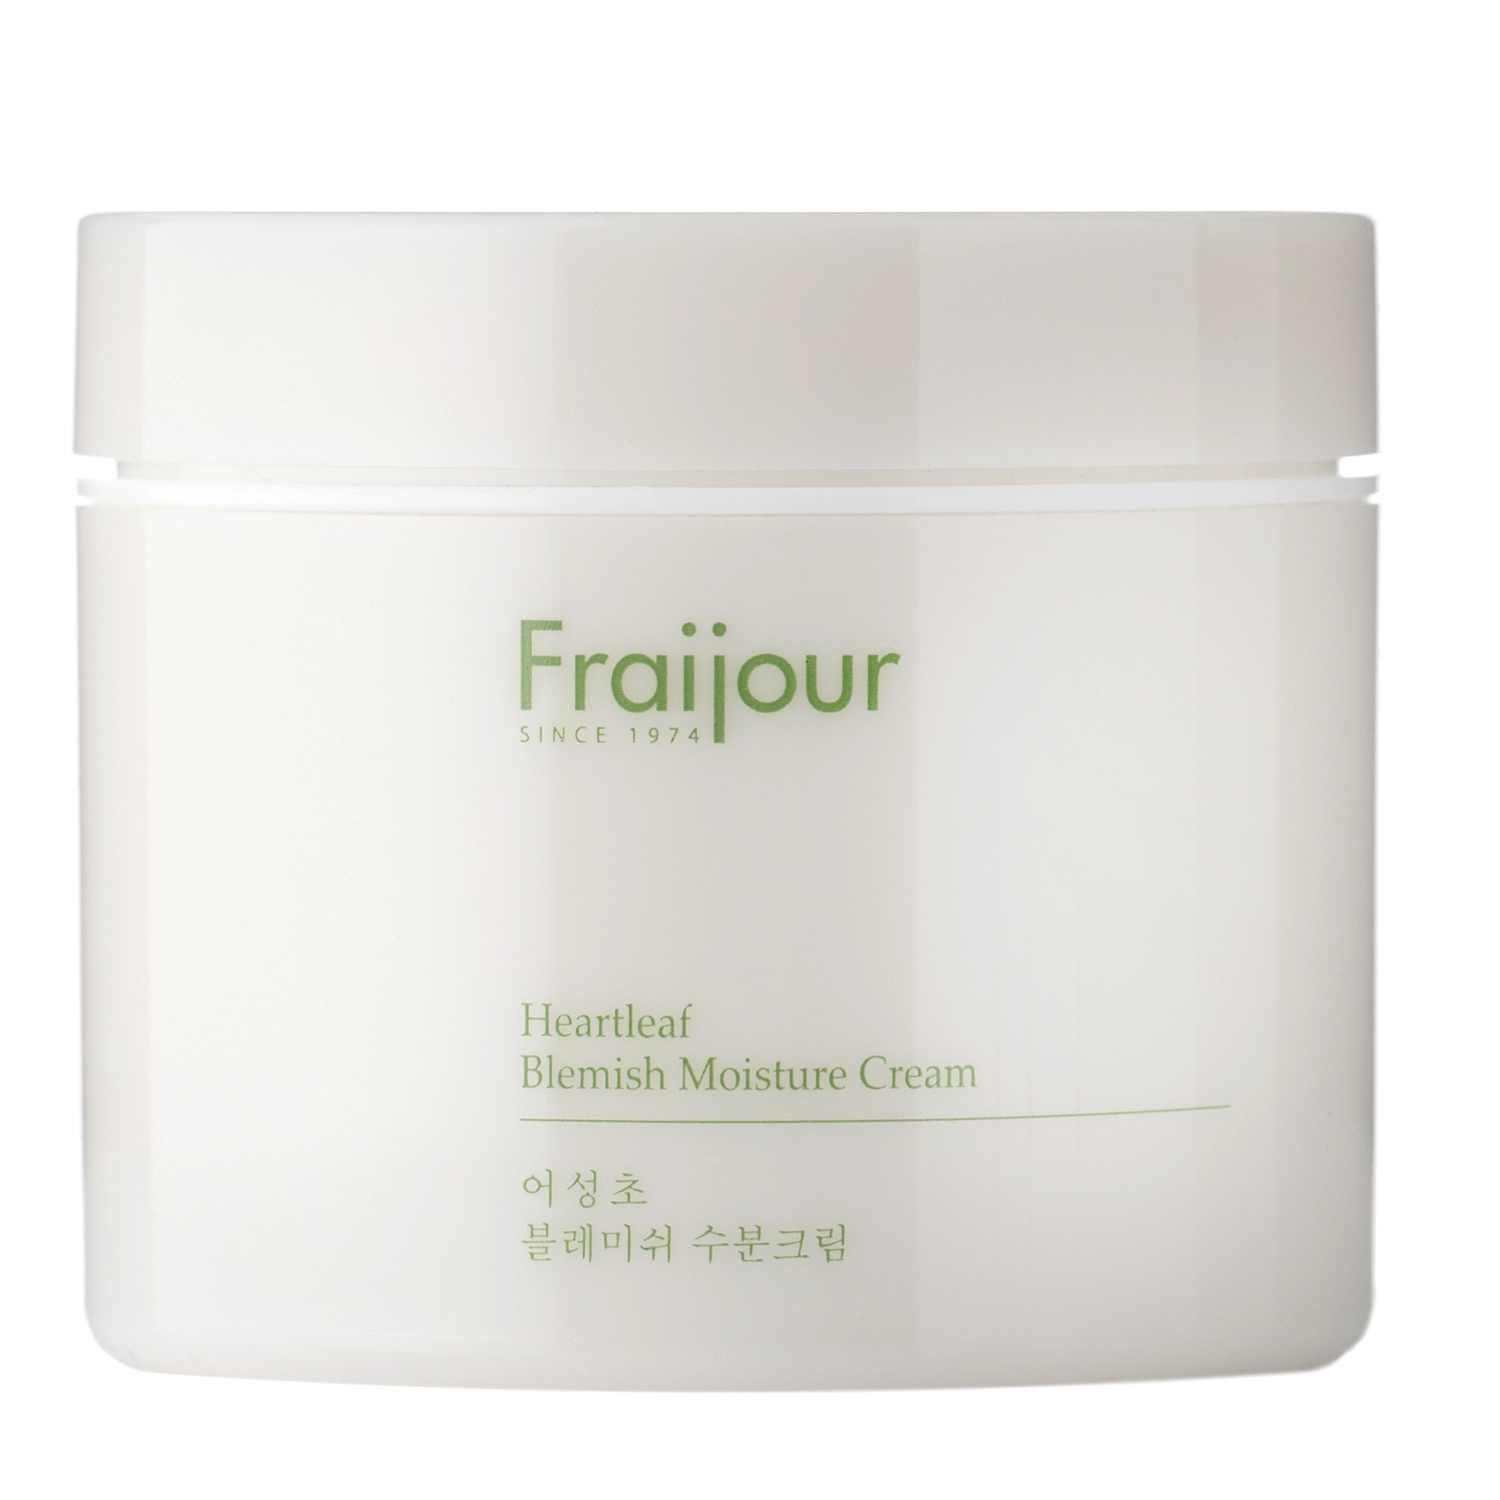 Fraijour - Heartleaf Blemish Moisture Cream -  Feuchtigkeitsspendende Creme mit Houttuynia -100ml